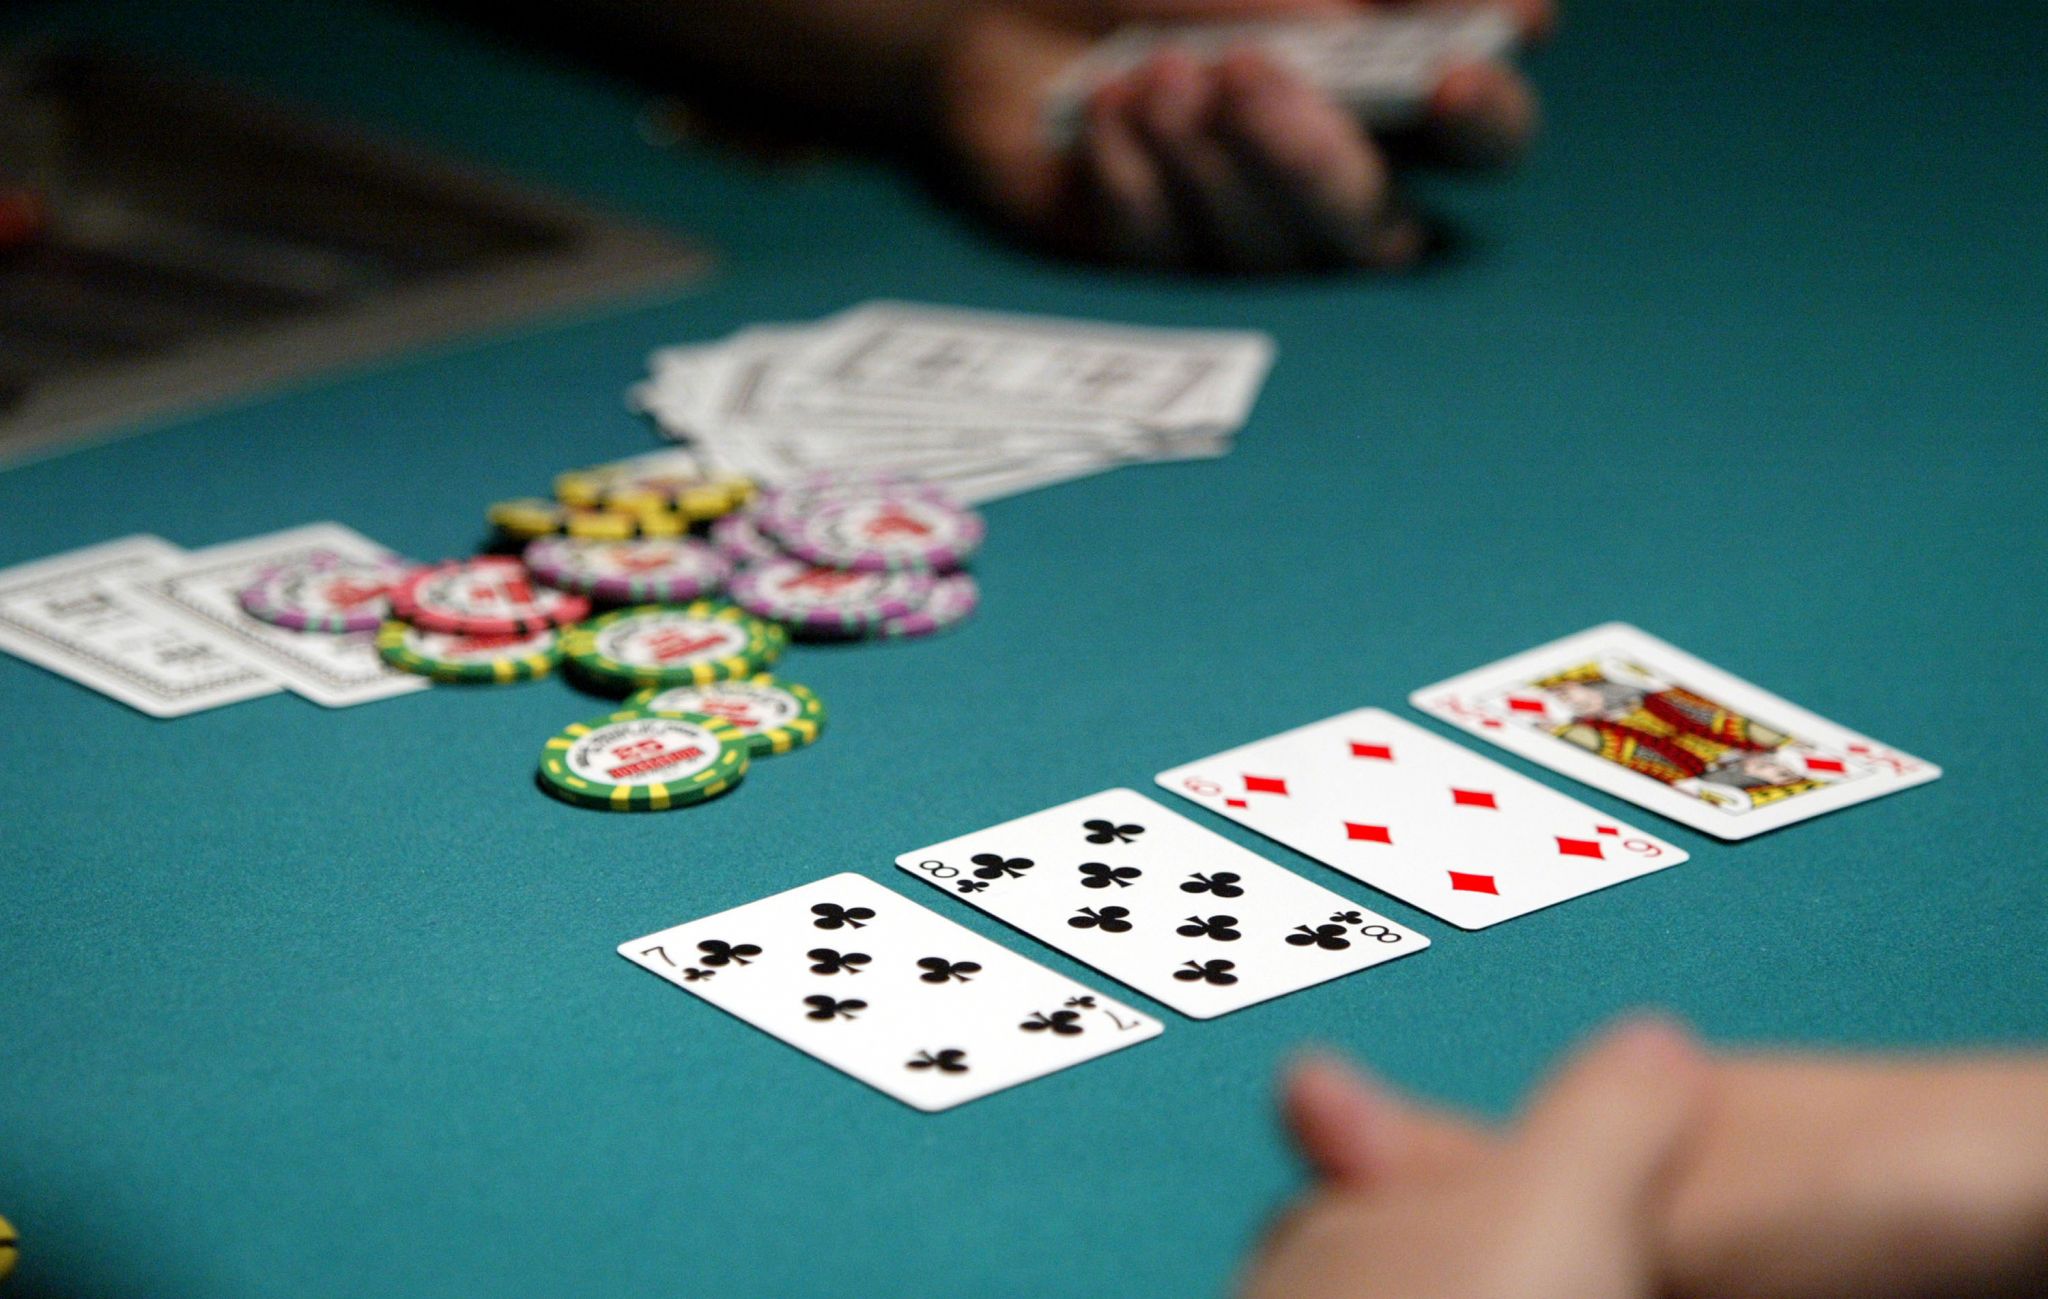 Tại sao chọn một trang về phạm vi poker?